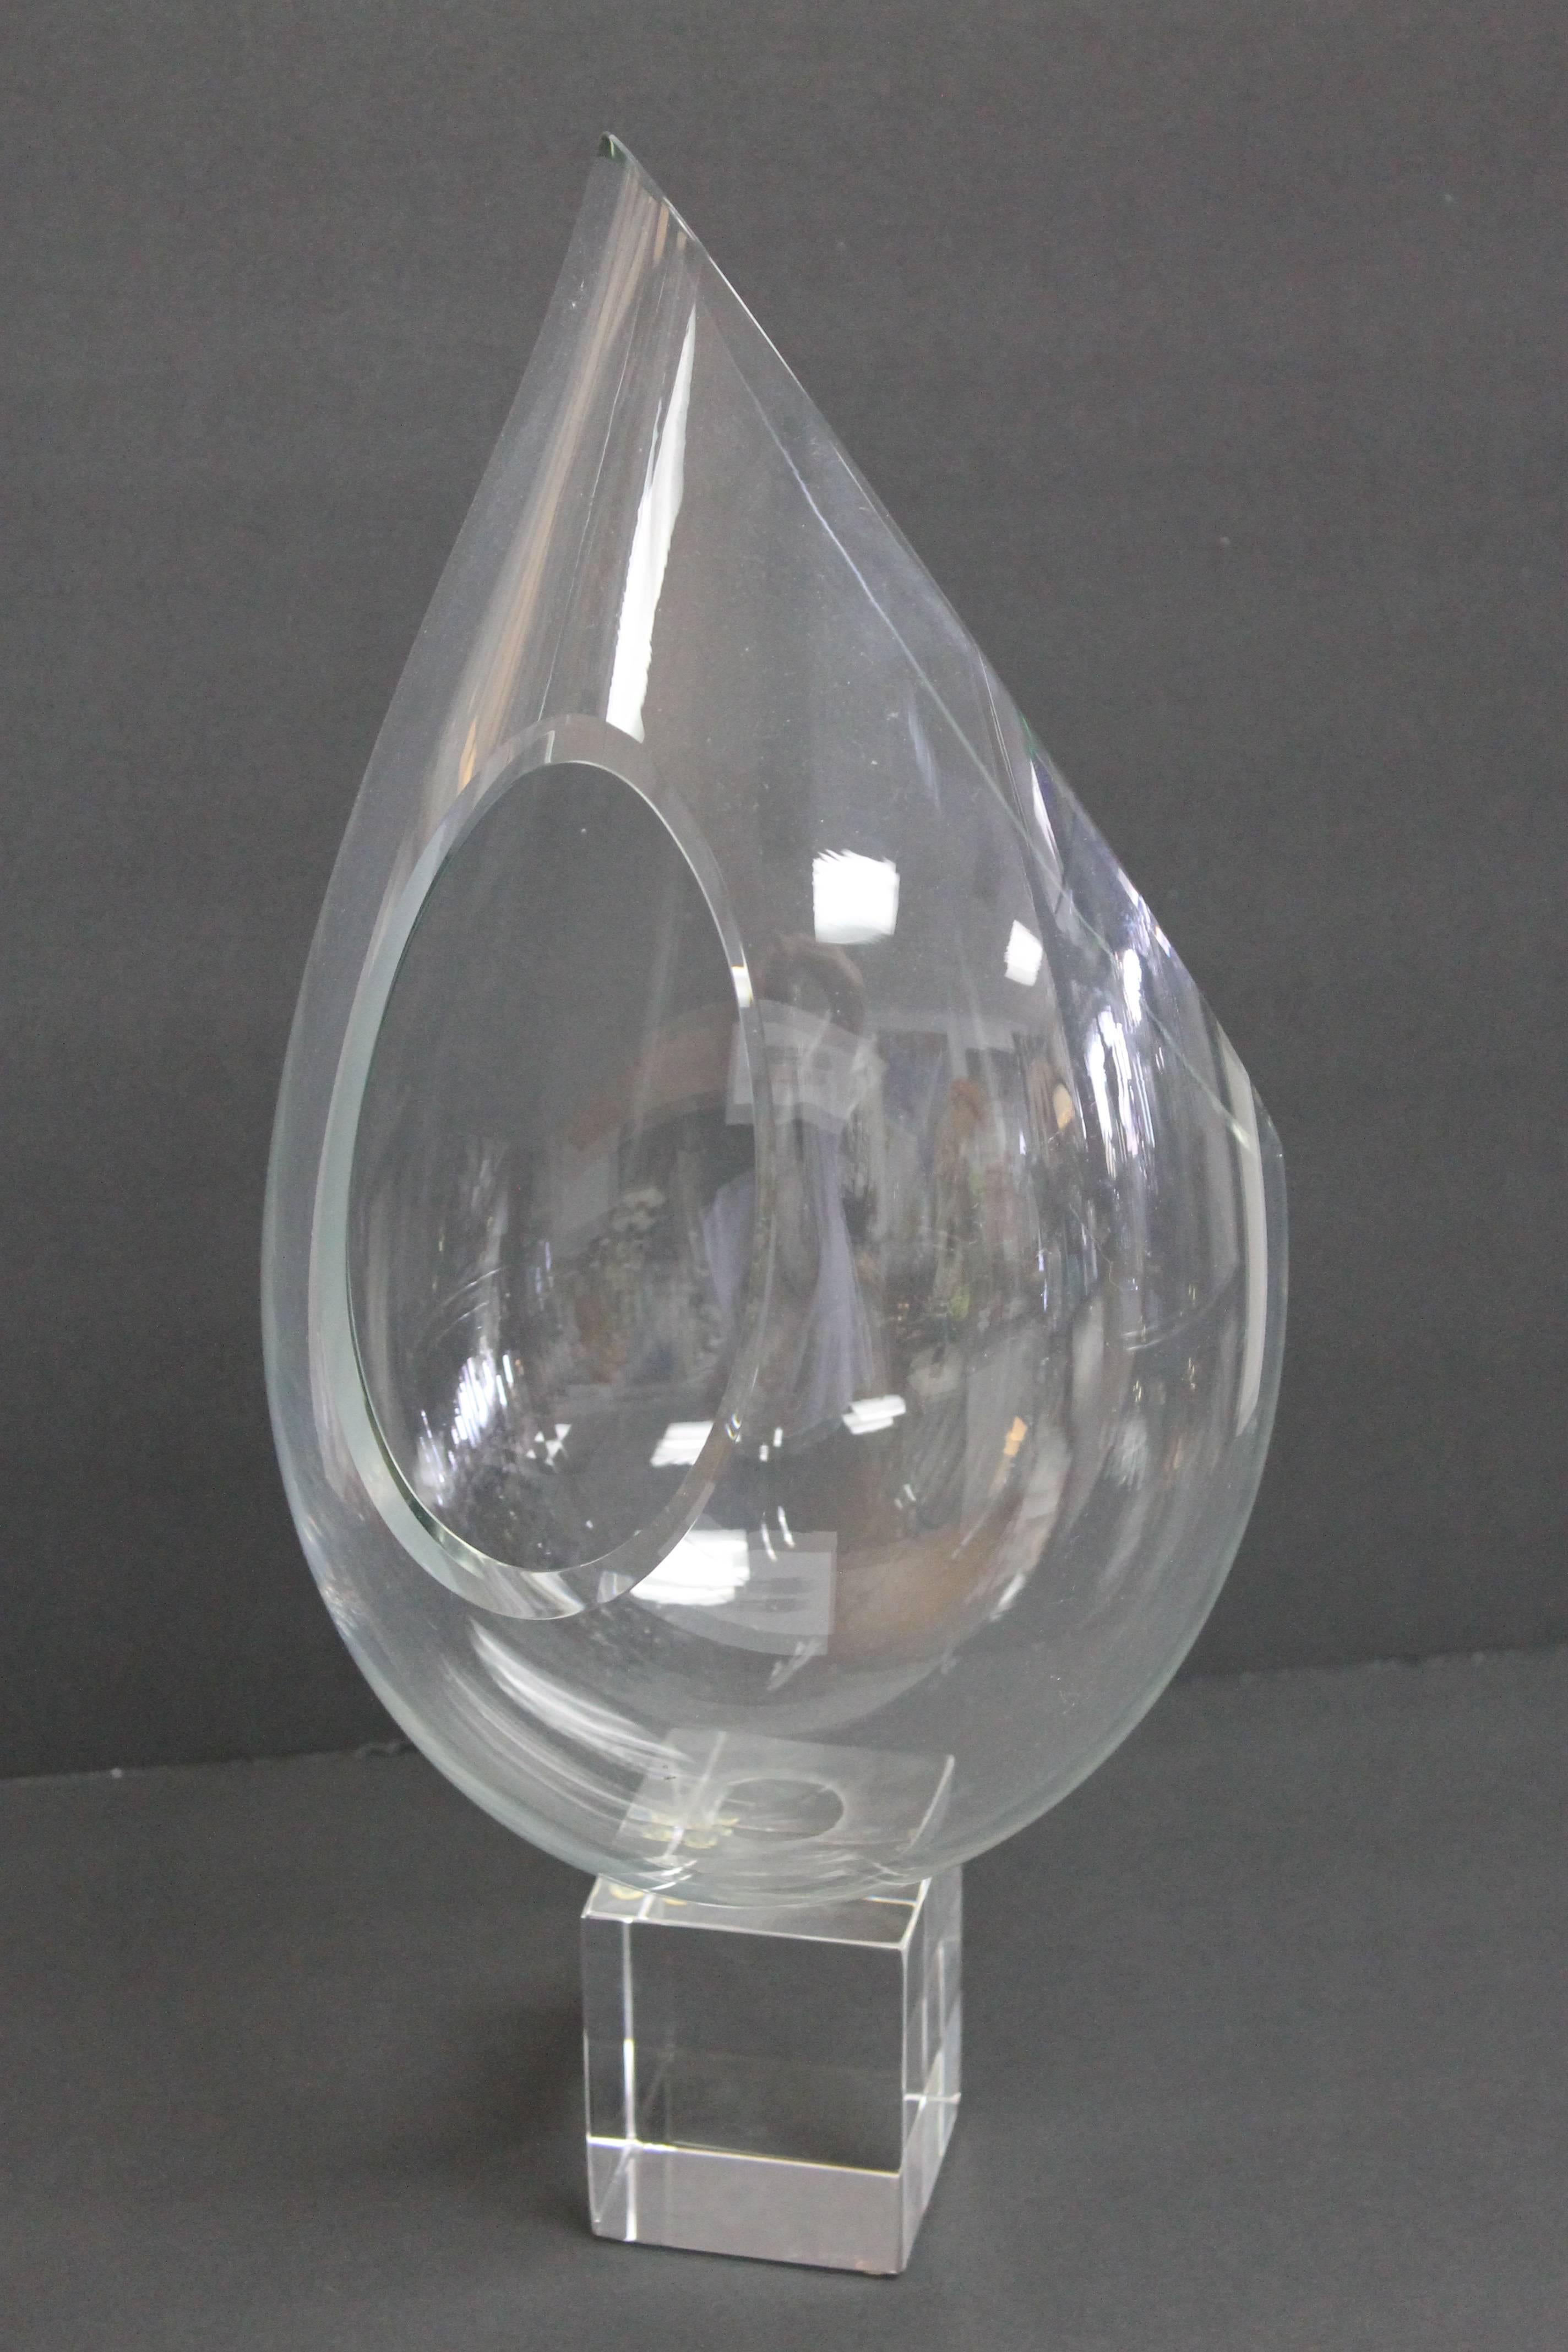 John Bingham sculpture or glass vase. Signed on base. Sculpture measures 17